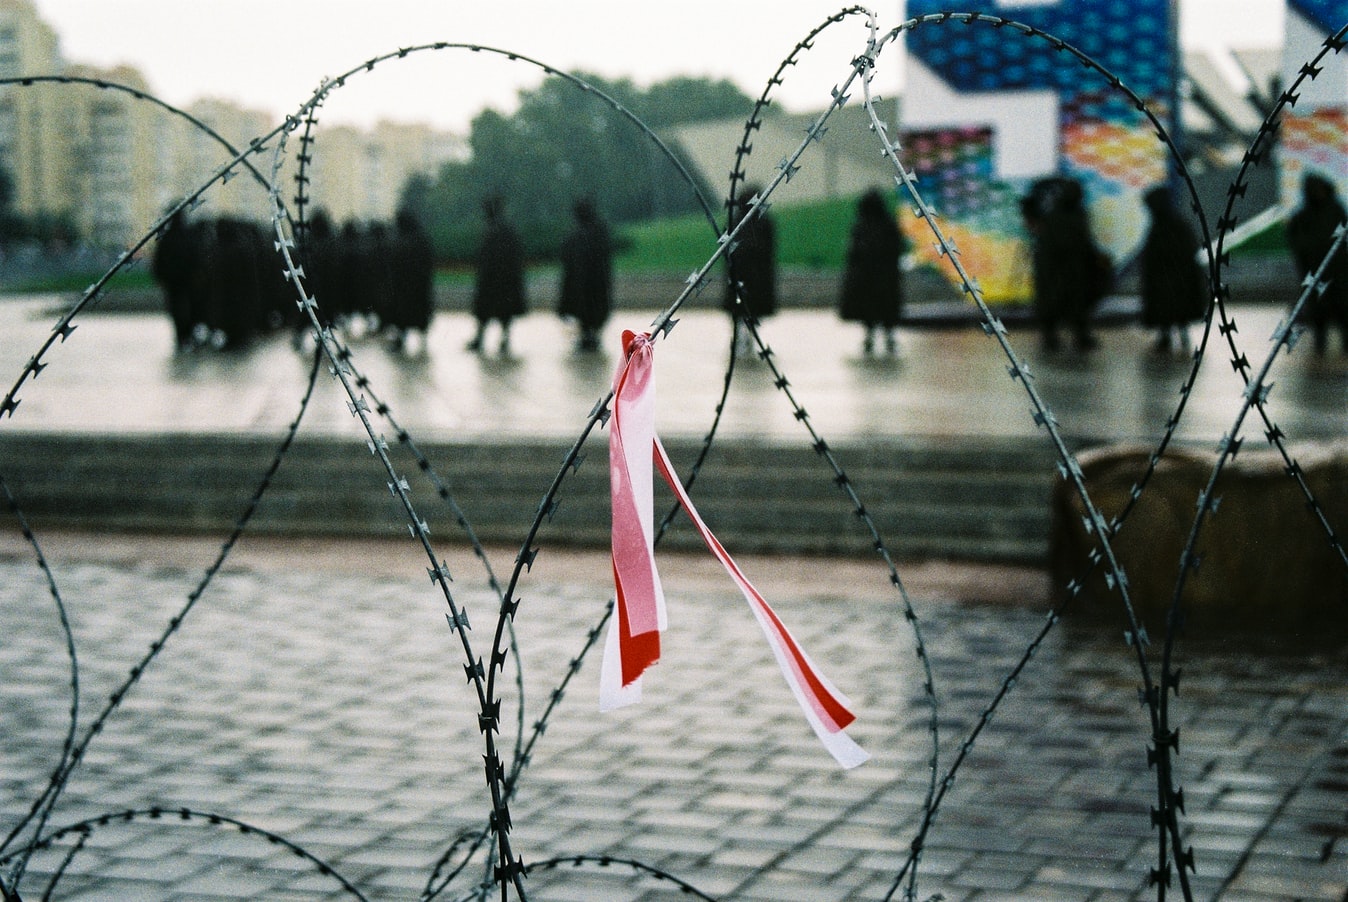 Piggtråd foran et torg. En sløyfe i de hviterussiske flaggfargene rødt og hvitt er knytt på gjerdet.